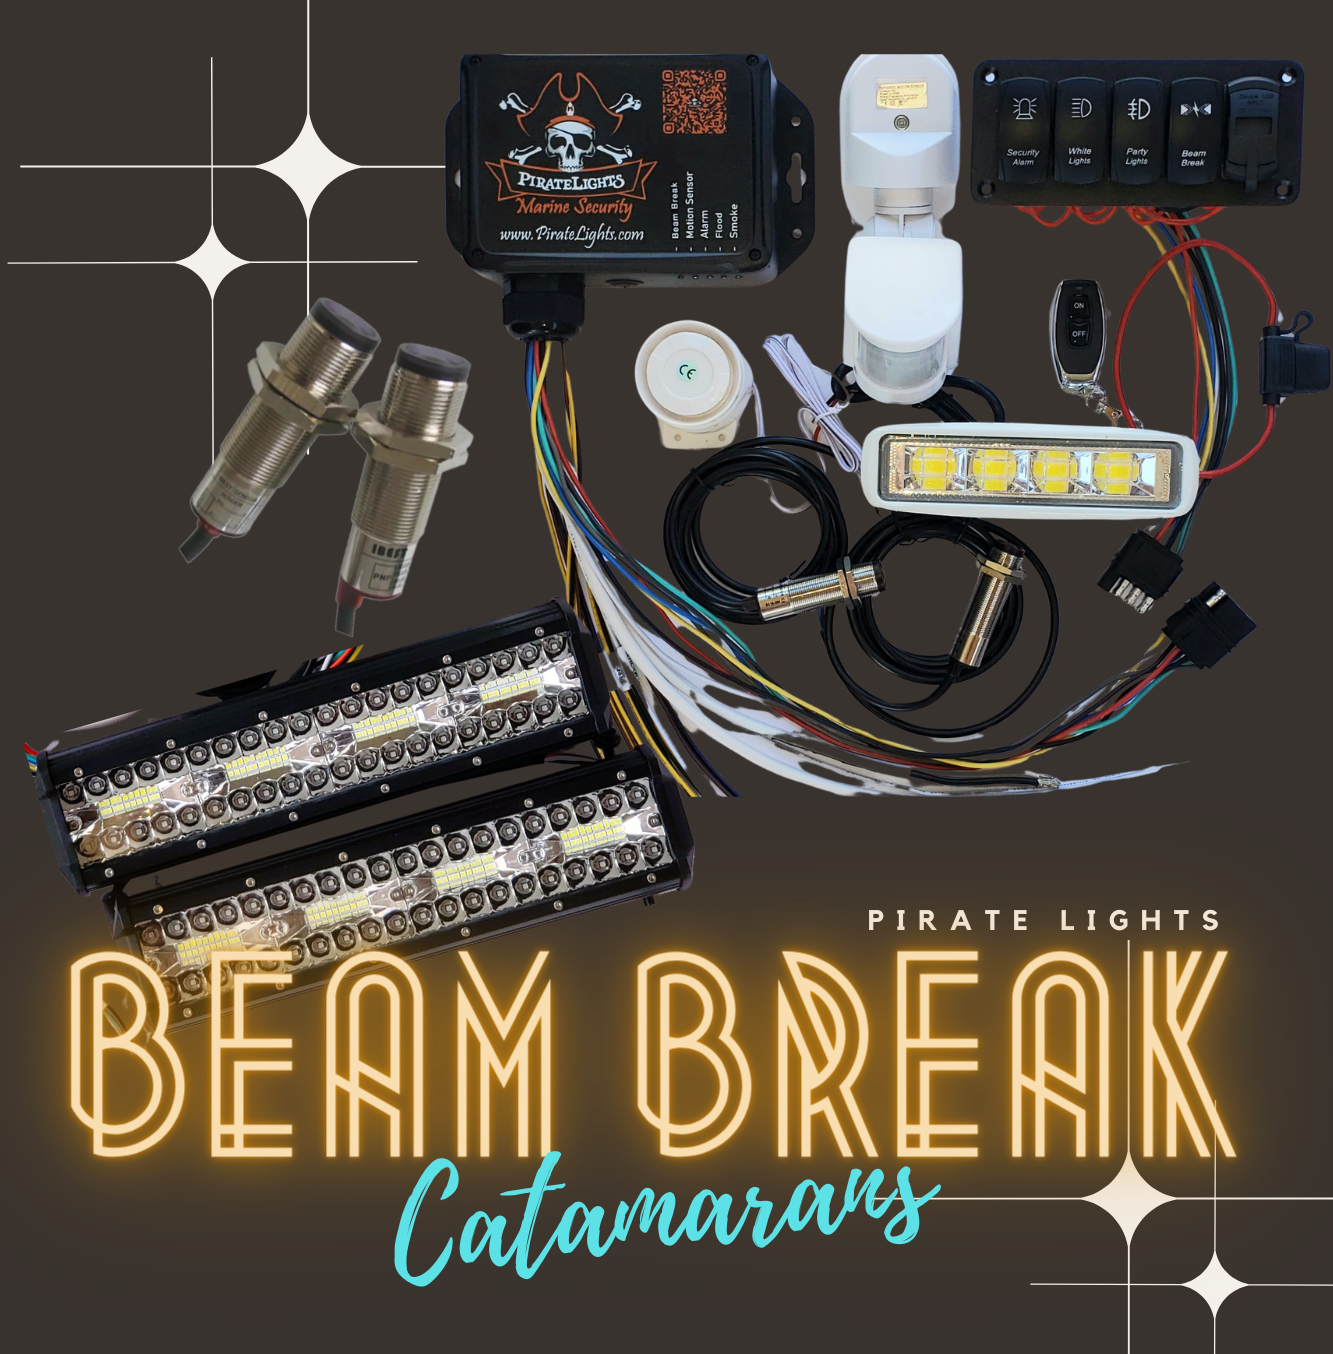 The Beam Break Unit